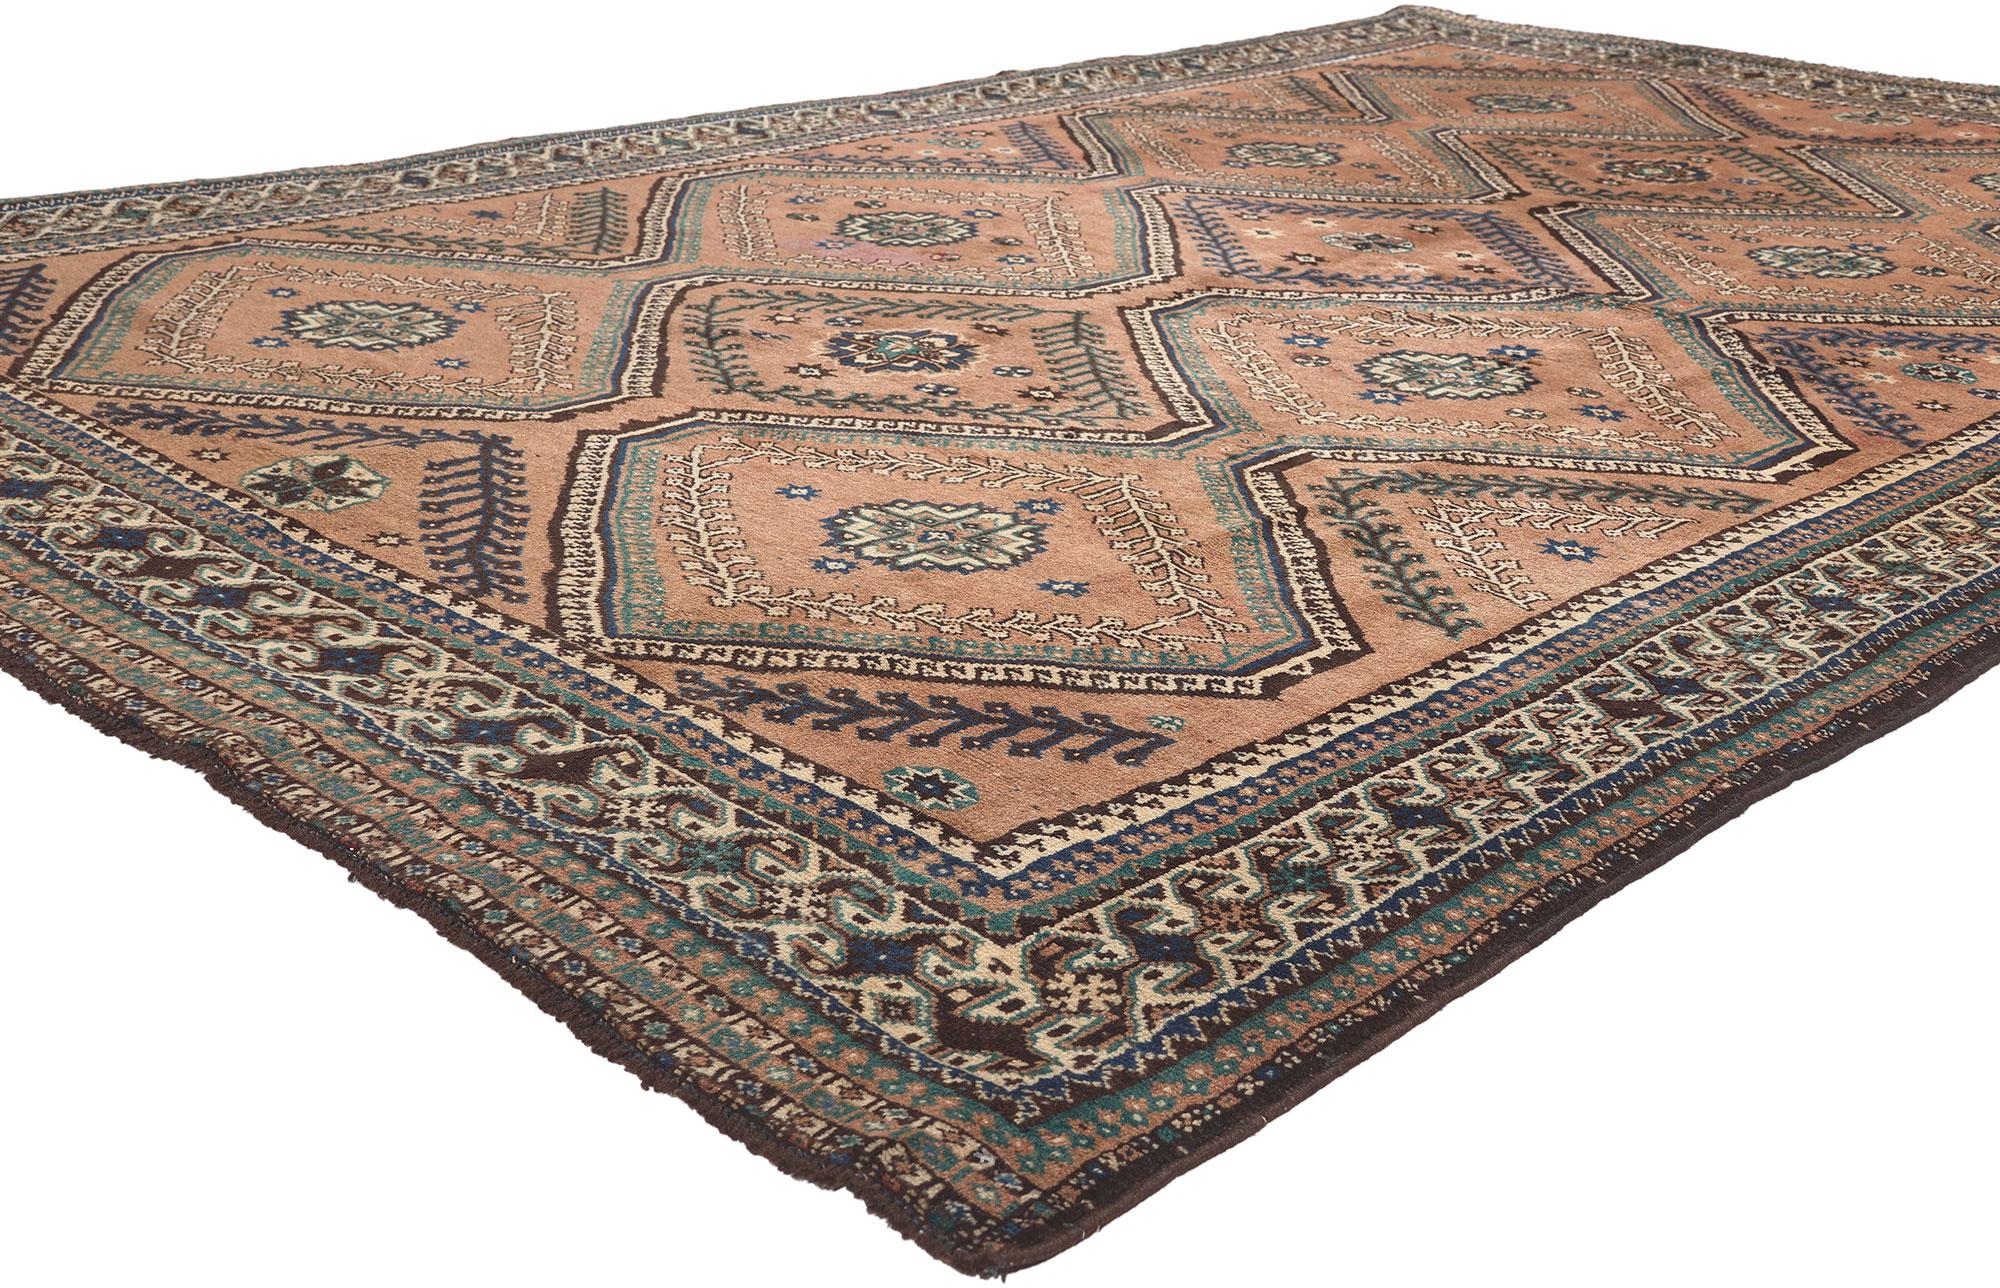 75926 Vintage Persian Shiraz Rug, 06'05 X 10'05. 
Gemütliches Nomadentum trifft auf betörenden Charme in diesem handgeknüpften persischen Shiraz-Teppich aus Wolle im Vintage-Stil. Das Tribal-Gitter und die warmen Erdtöne, die in dieses Stück